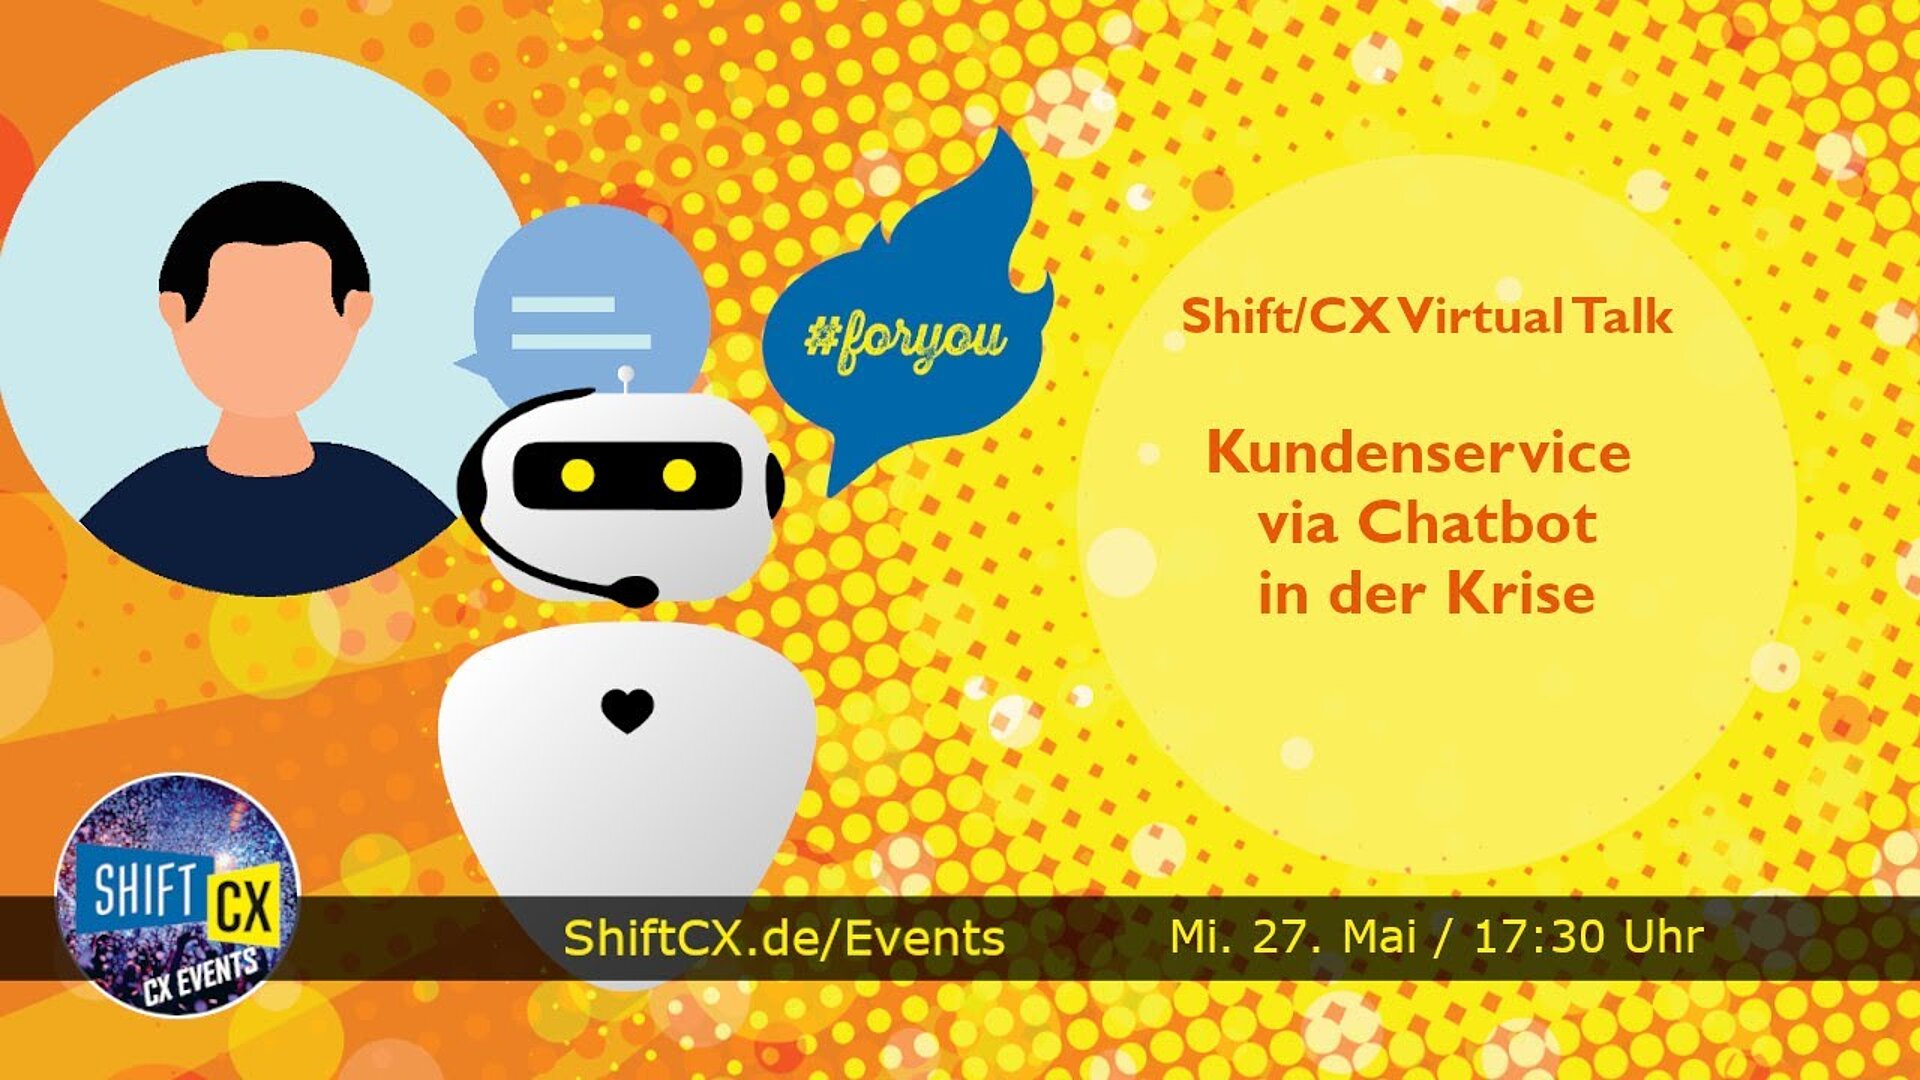 Shift/CX Virtual Talk: Kundenservice via Chatbot in der Krise - aktuelle Erfahrungen